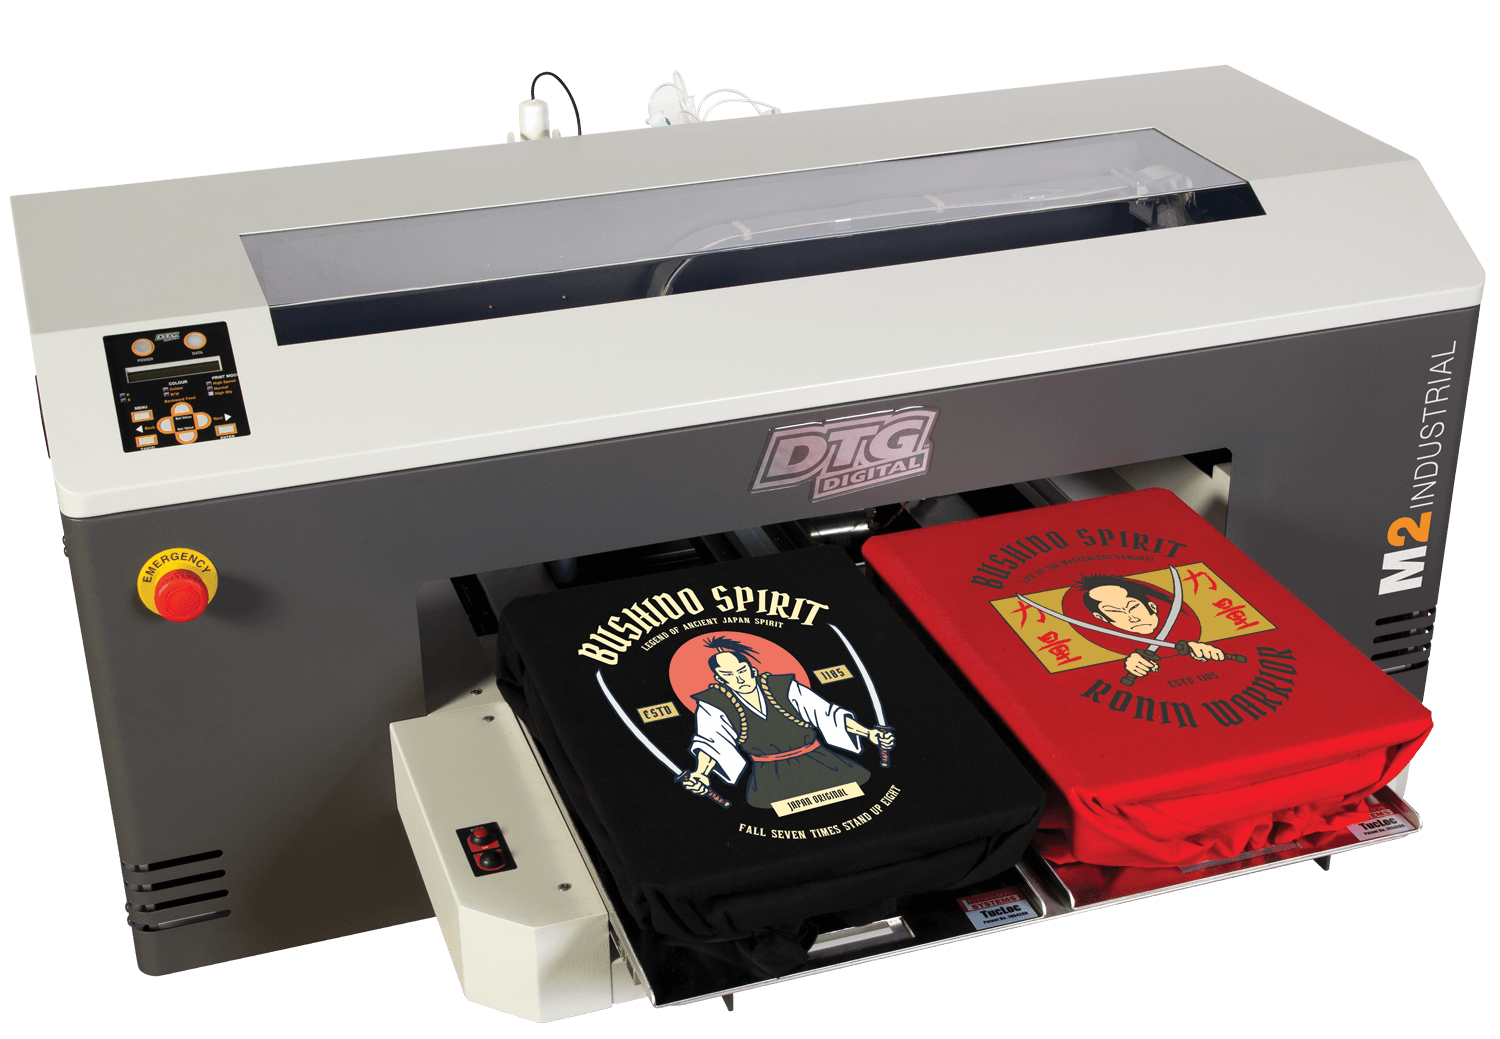 tee shirt printing equipment